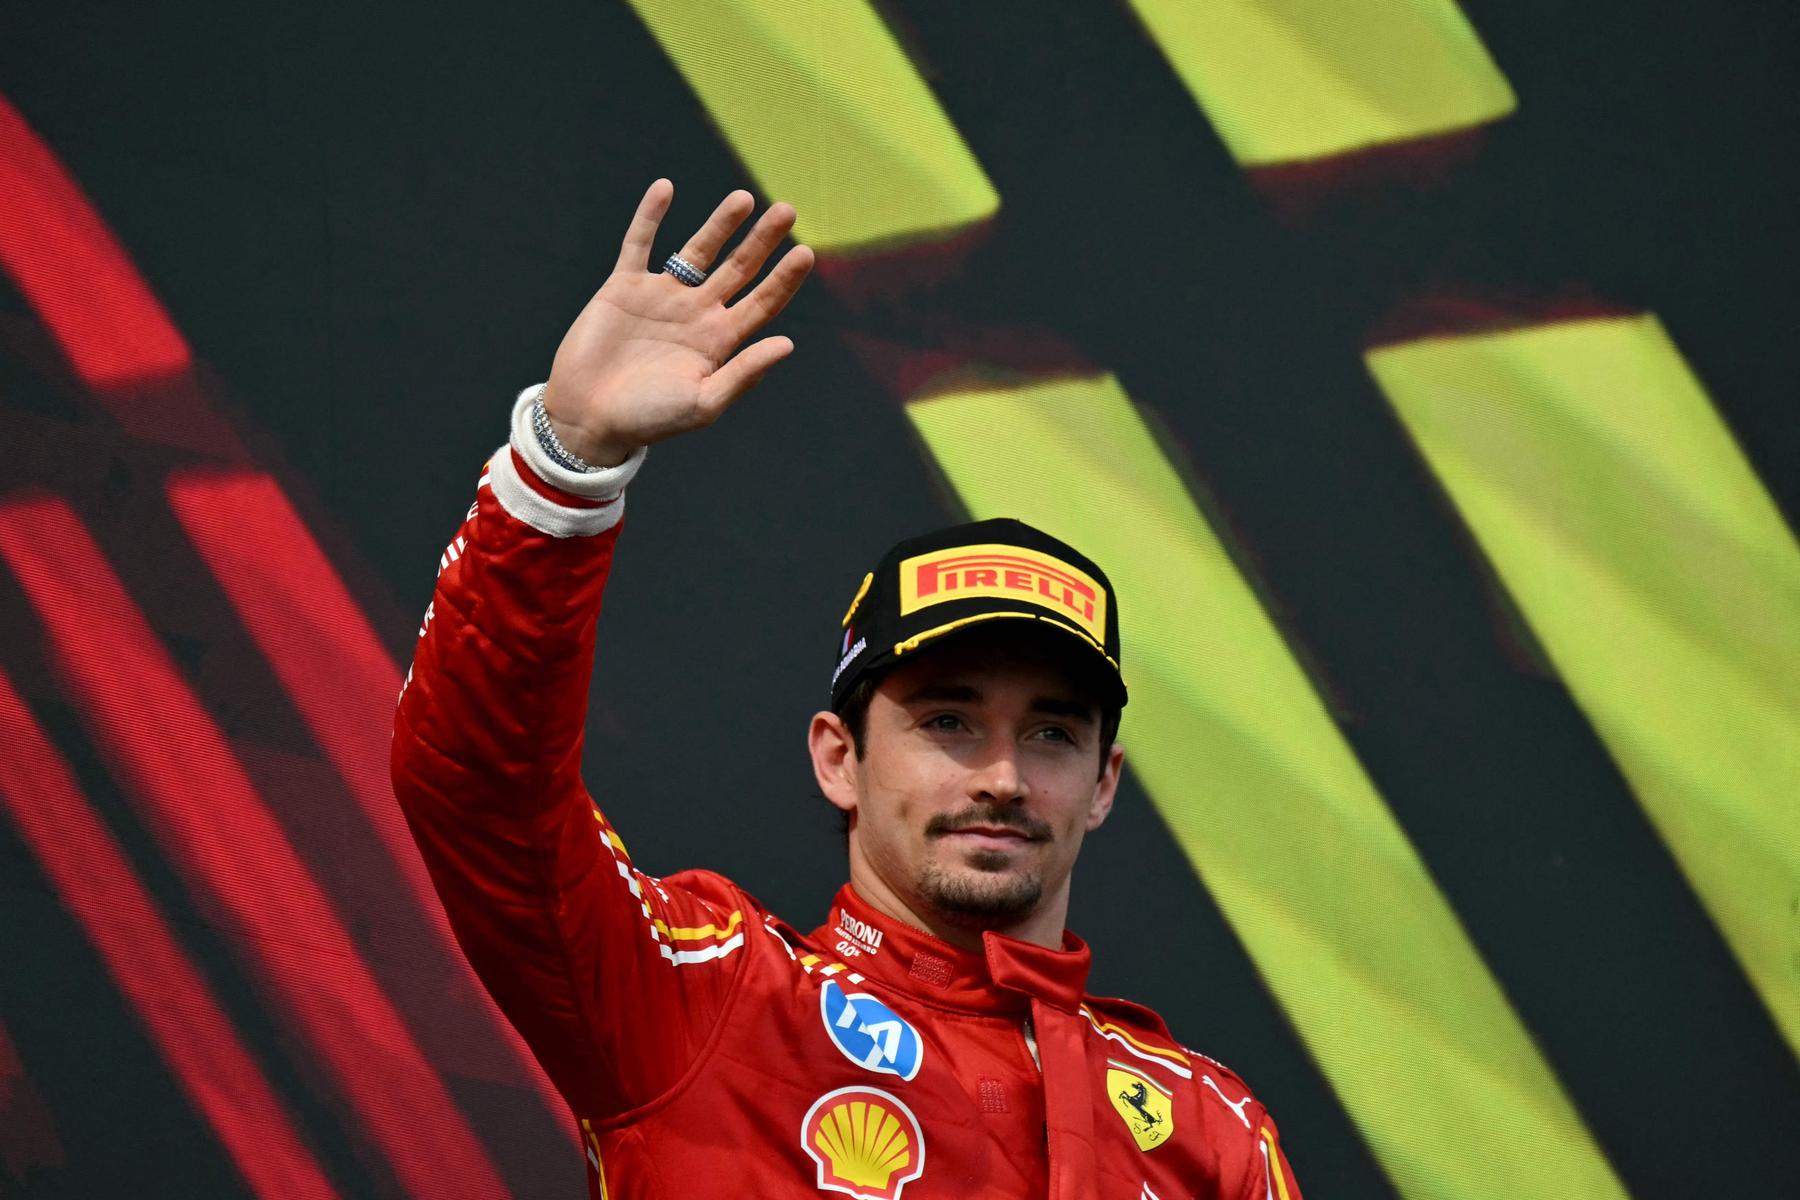 Formel-1-Star: Charles Leclerc mit süßem Welpen bei Grand Prix gesichtet